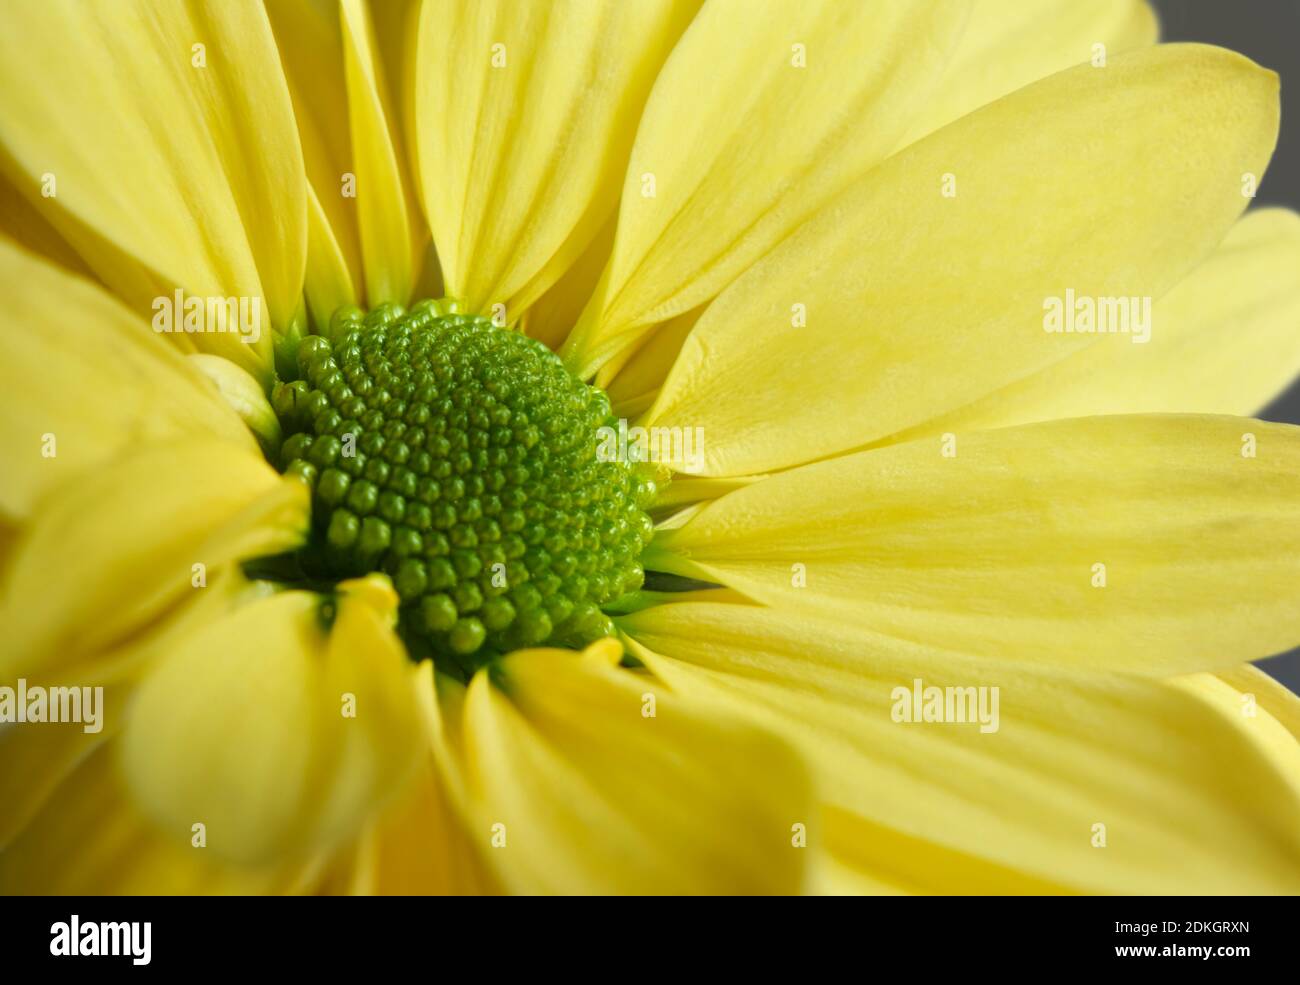 Nahaufnahme Foto von gelben Gänseblümchen Gerbera Blume zeigt die Staubblätter und Blütenblätter Stockfoto